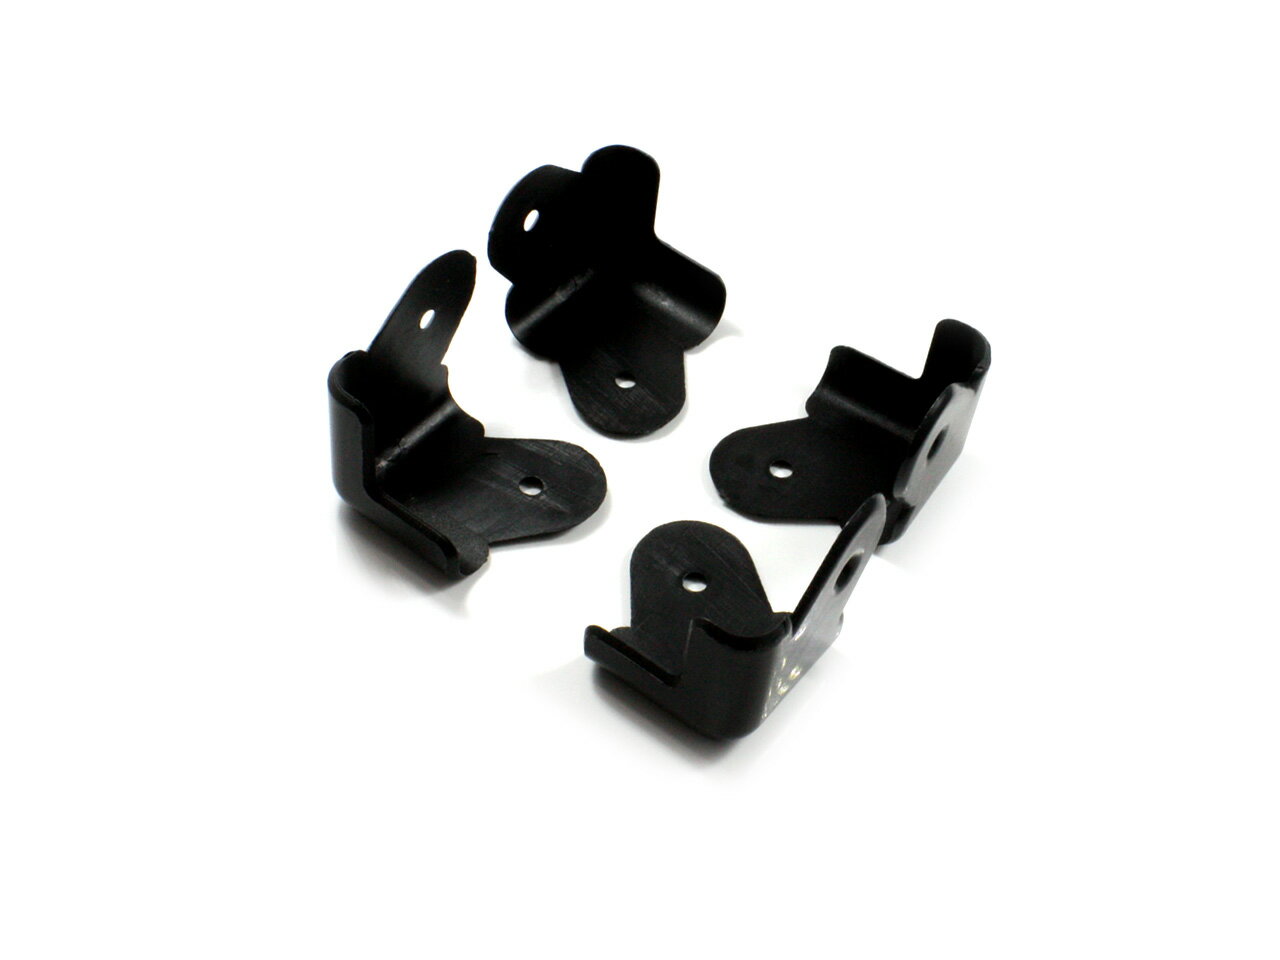 樹脂製 スピーカー コーナーガード 4個セット [ブラック] コーナープロテクター 角を保護